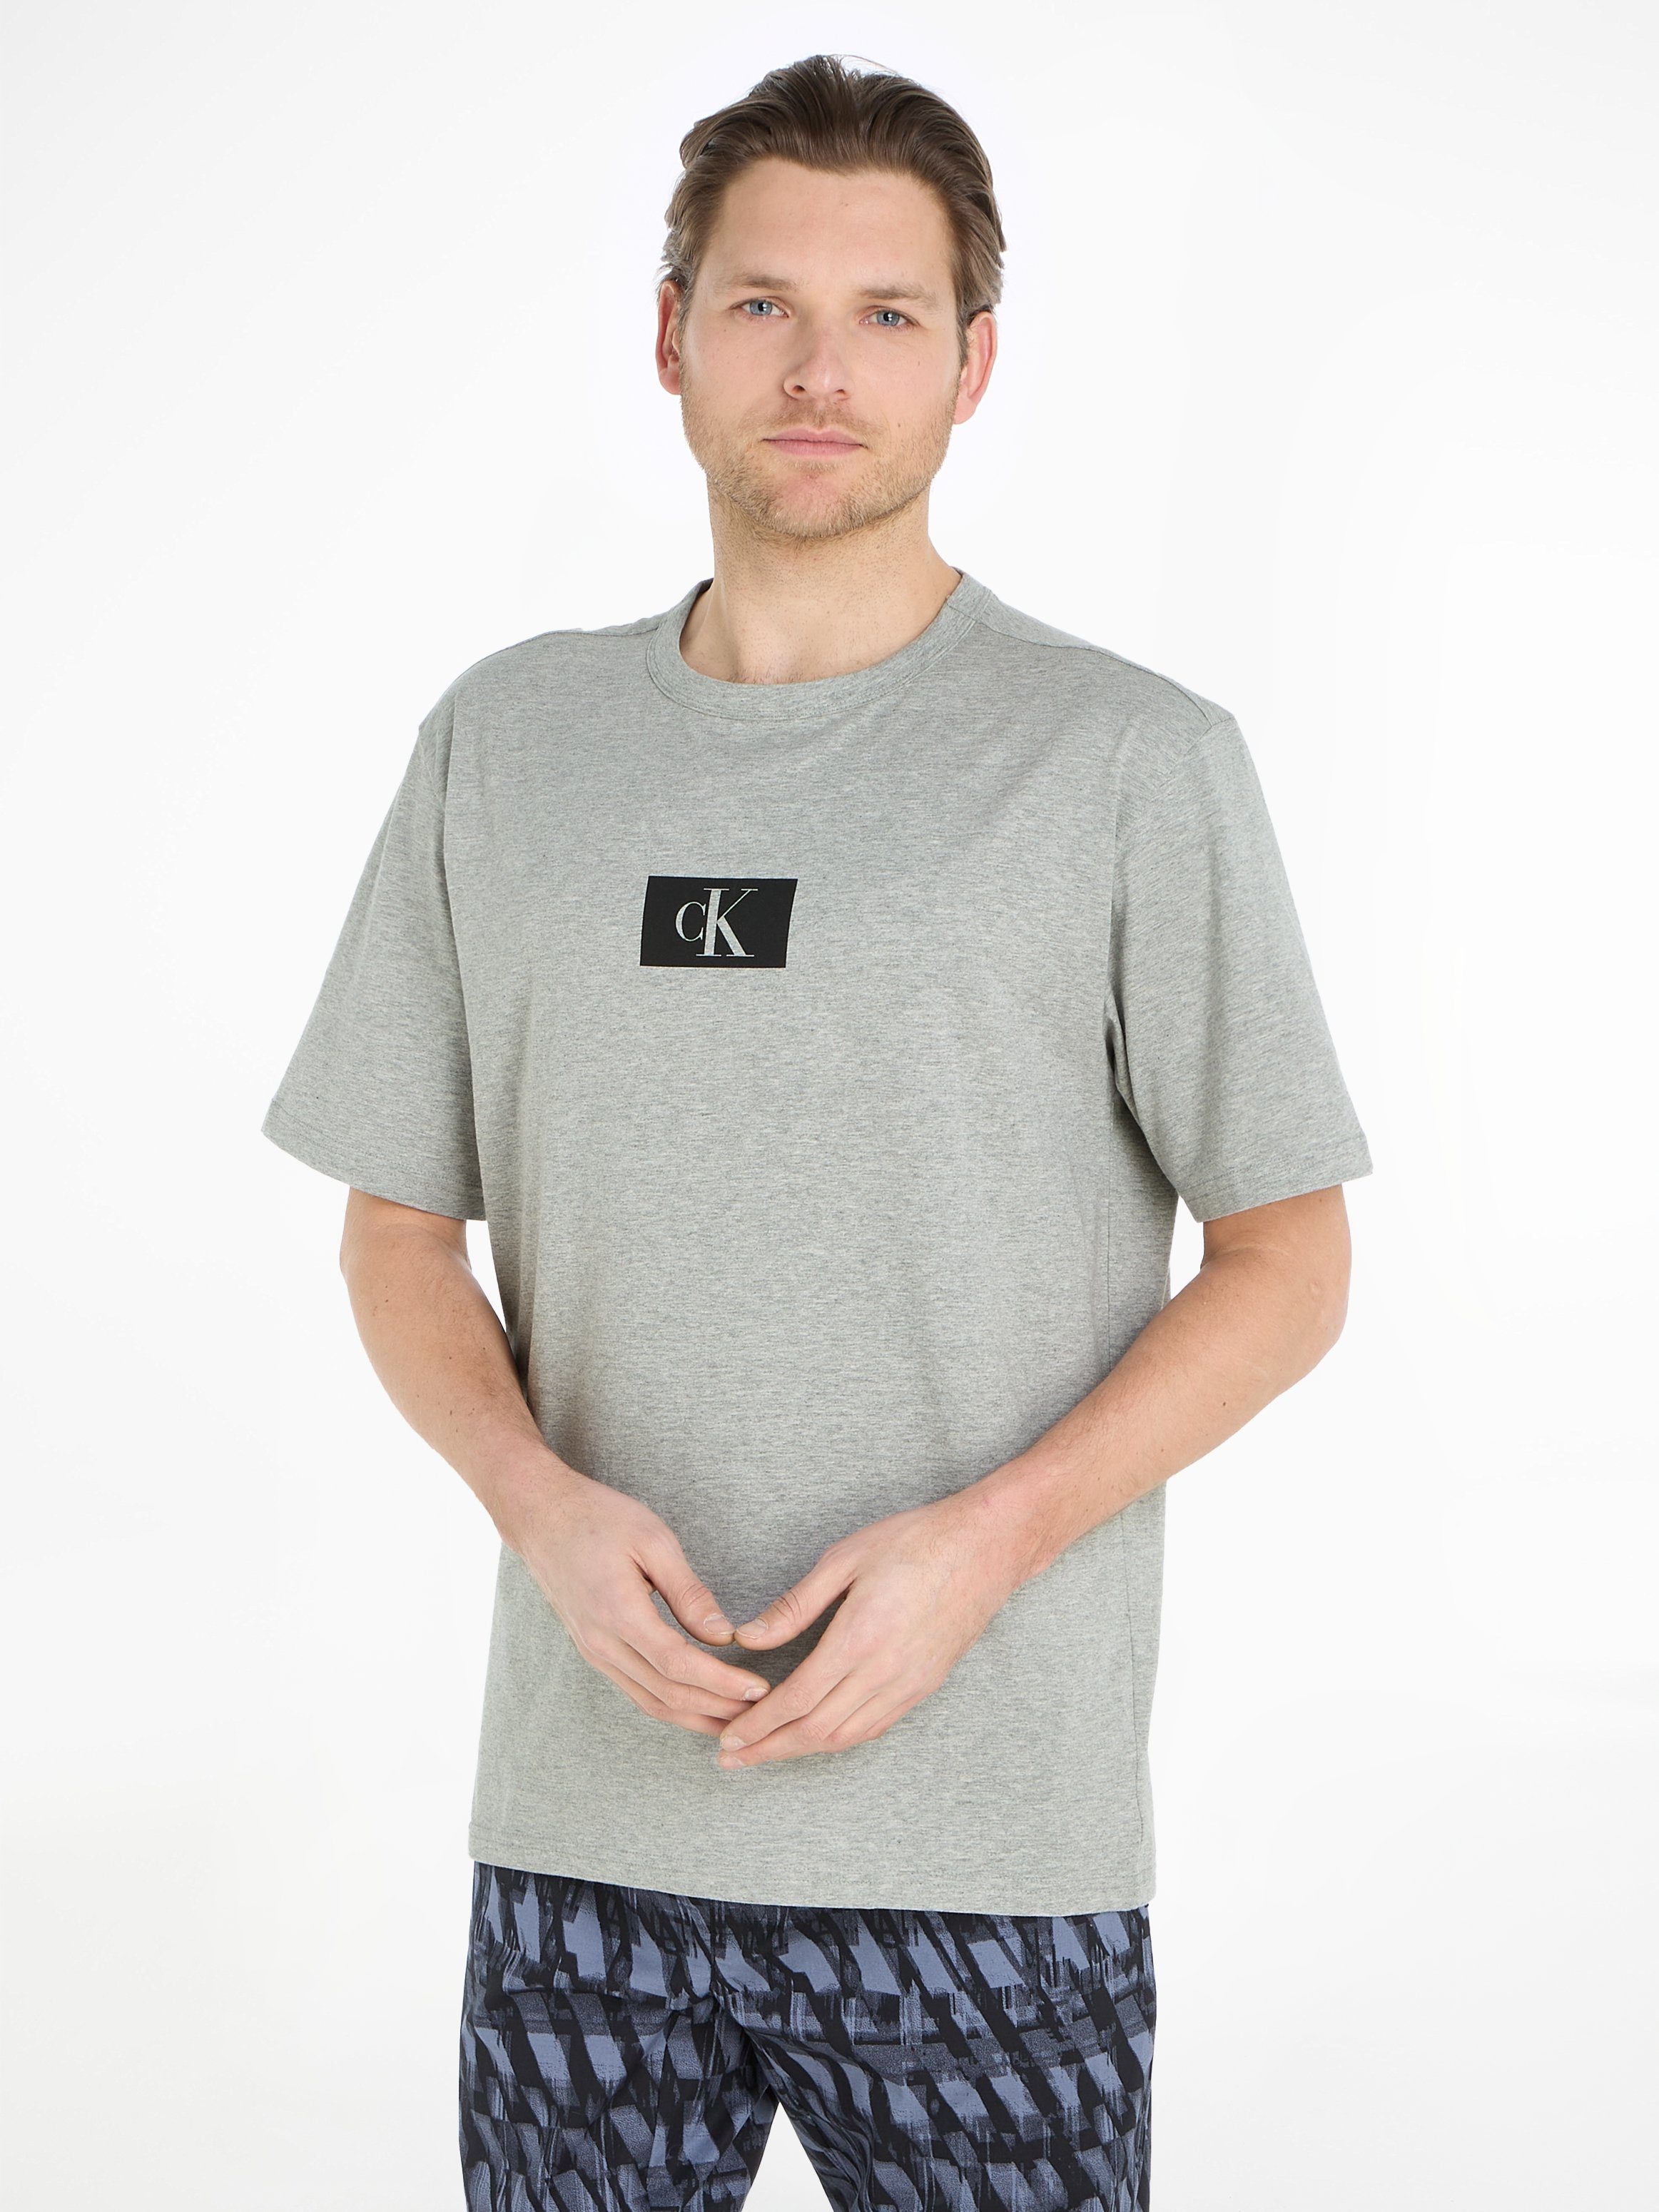 T-Shirt Calvin Logodruck Brust auf GREY-HEATHER Underwear der mit CREW Klein S/S NECK